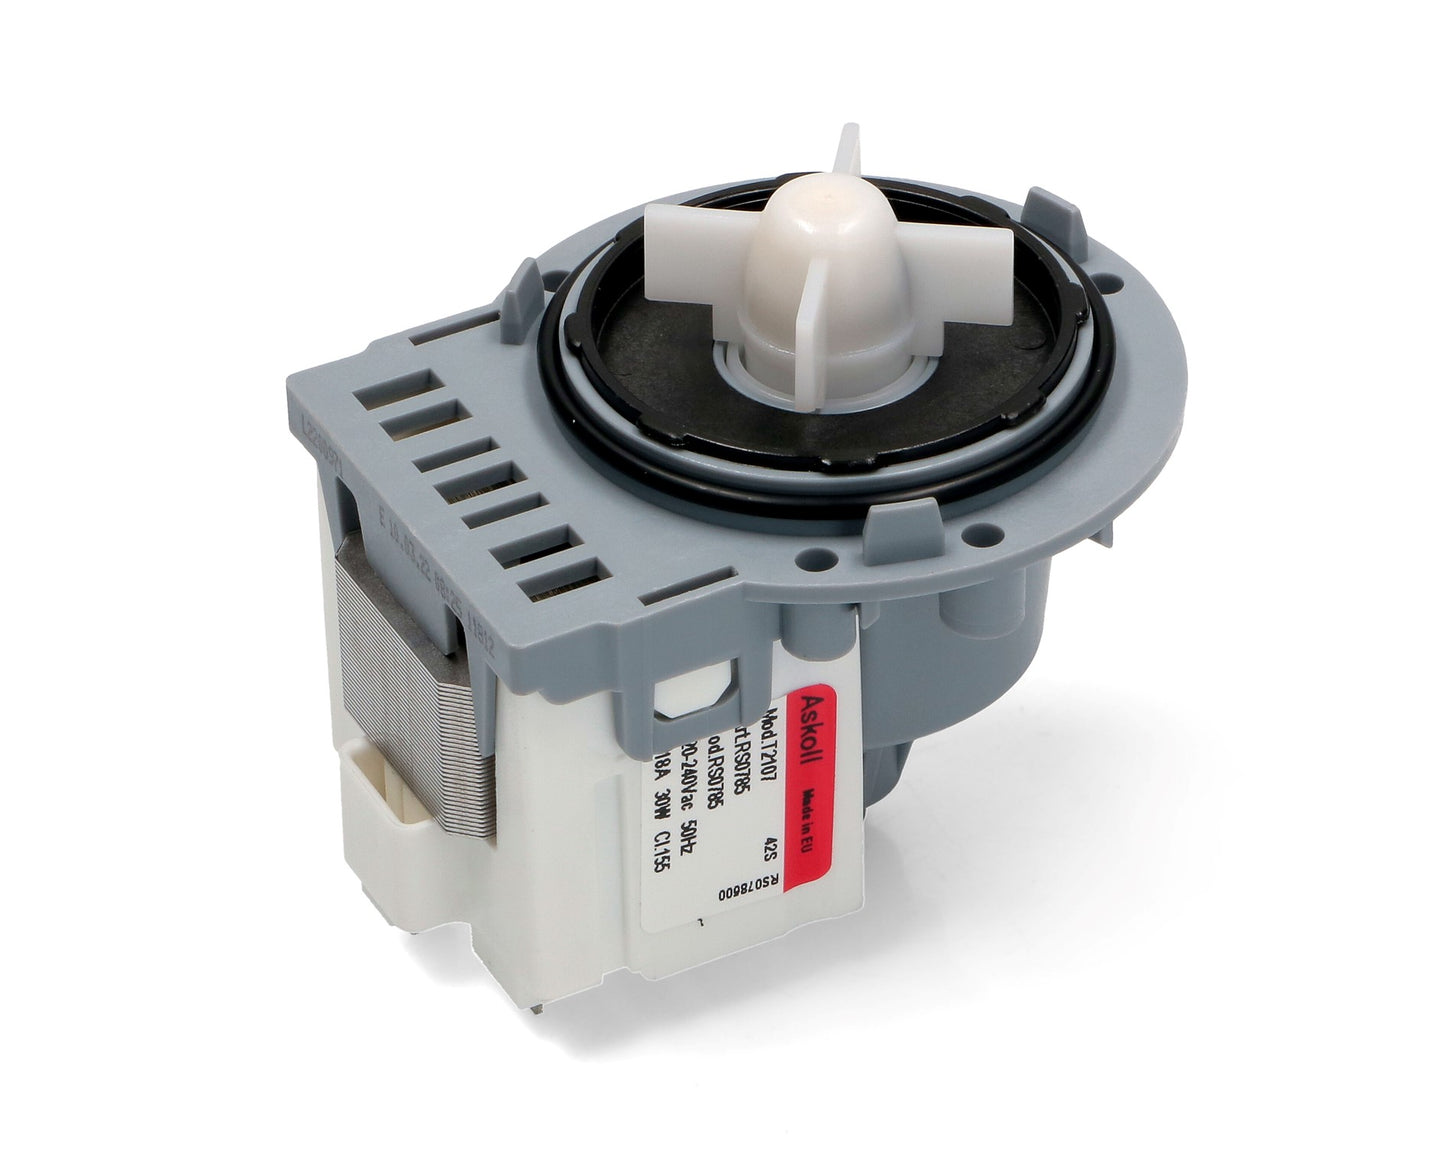 Askoll Drain Pump Motor 30W for Electrolux, Zanussi Washing Machine - 4055093050, 50245289009, 50266741003, ES1606108